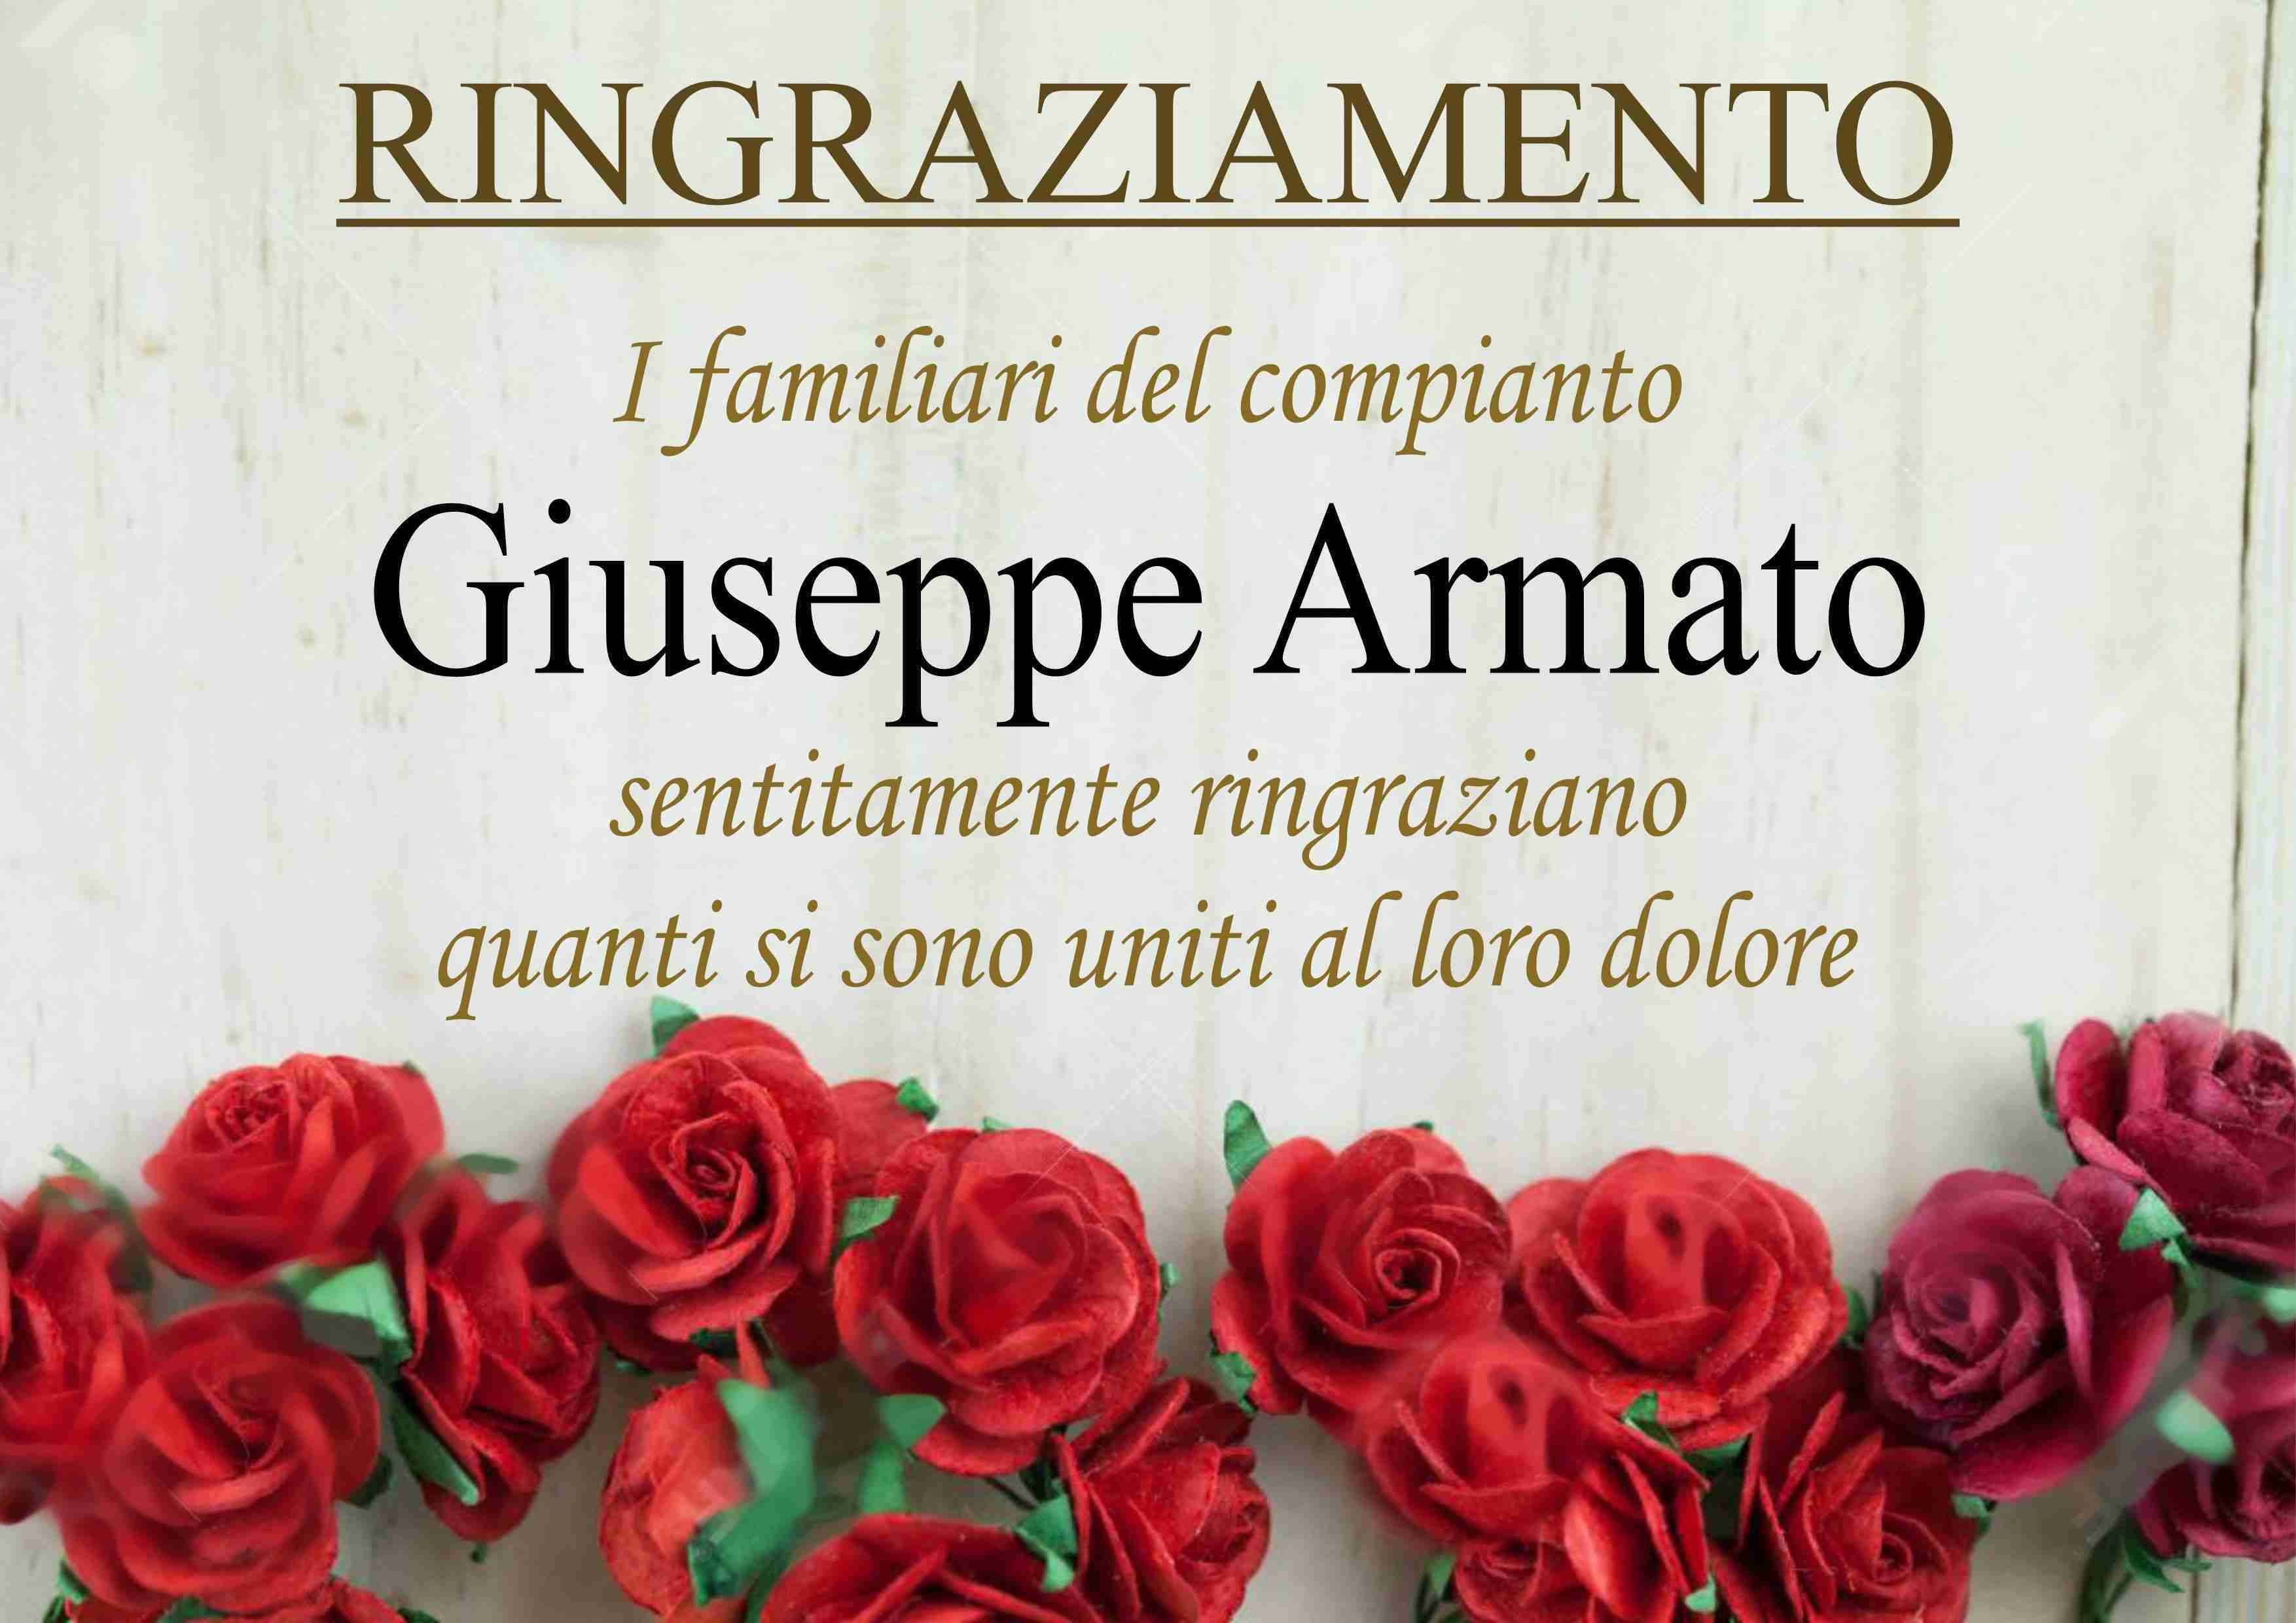 Giuseppe Armato